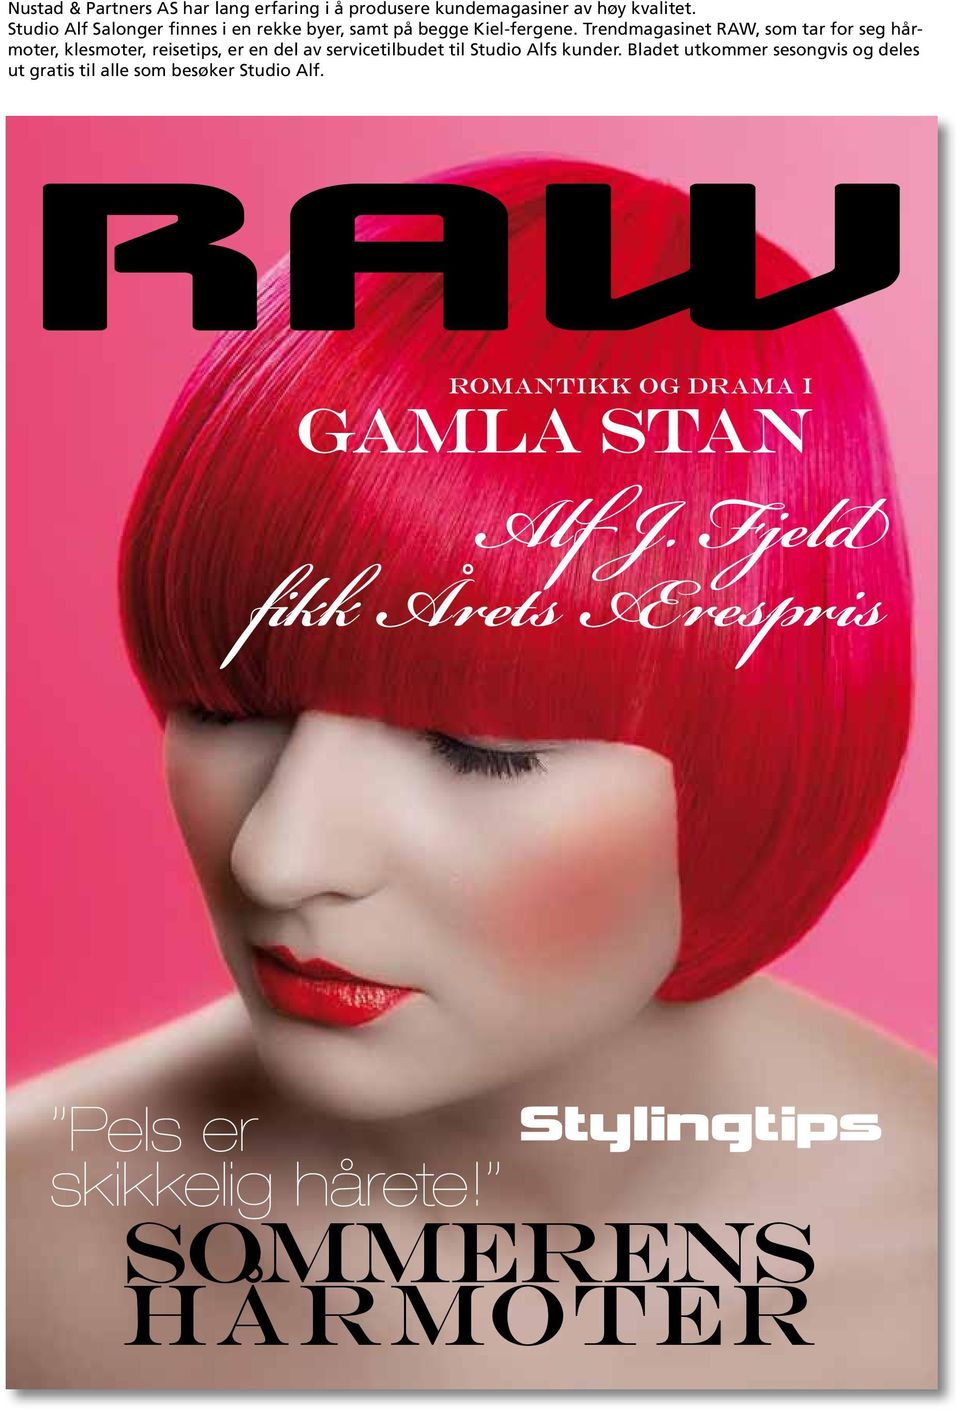 Trendmagasinet RAW, som tar for seg hårmoter, klesmoter, reisetips, er en del av servicetilbudet til Studio Alfs